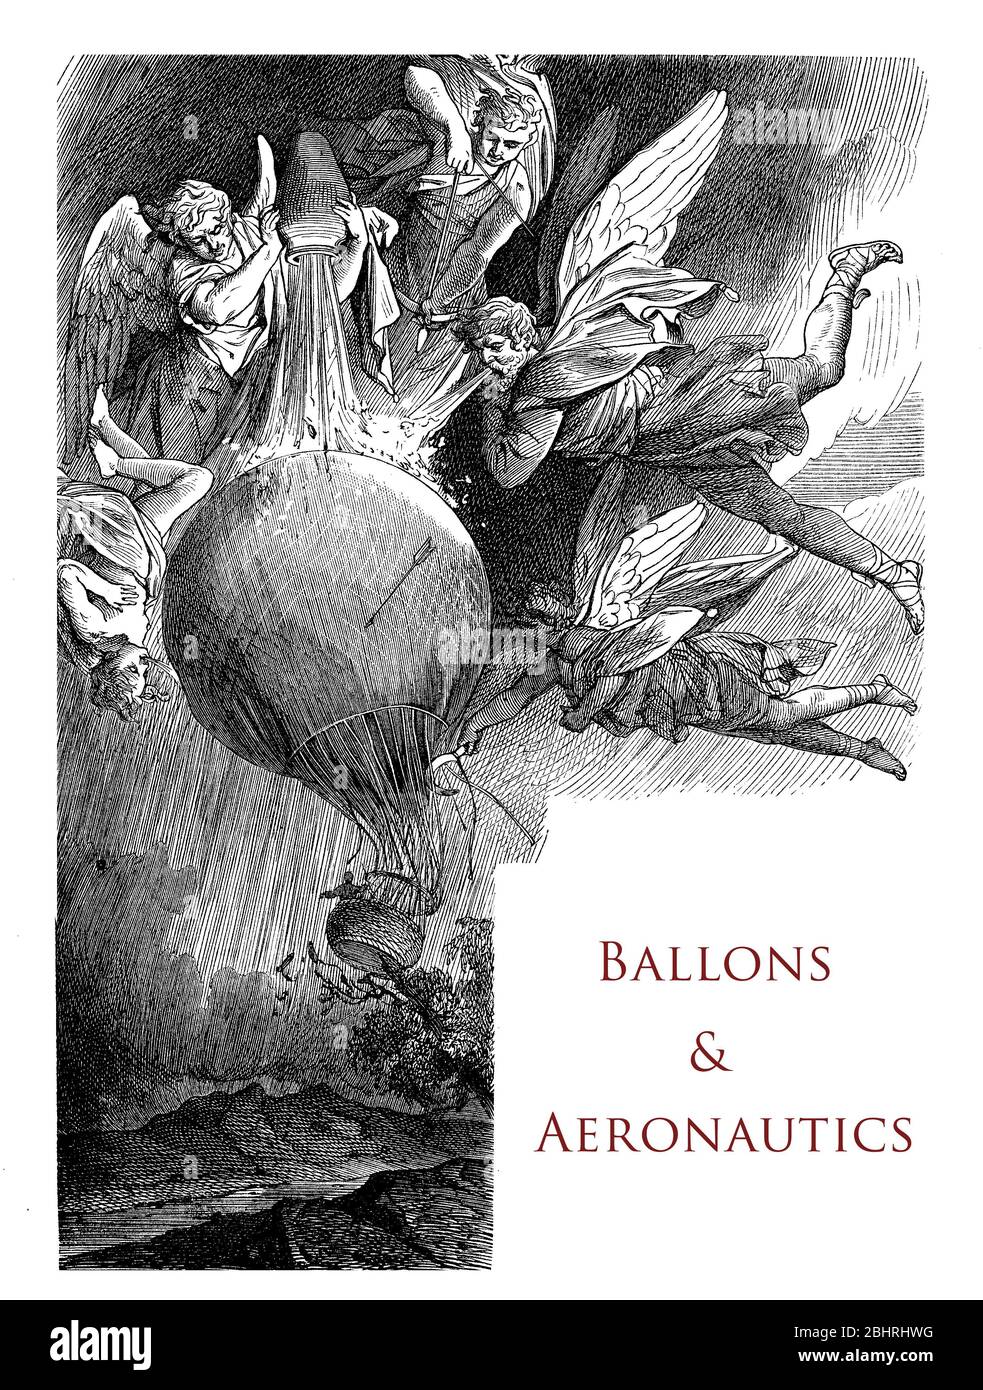 Chapitre typographique page décoration sur les ballons et l'aéronautique avec un mongolfiere, des anges et des figures mythologiques Banque D'Images